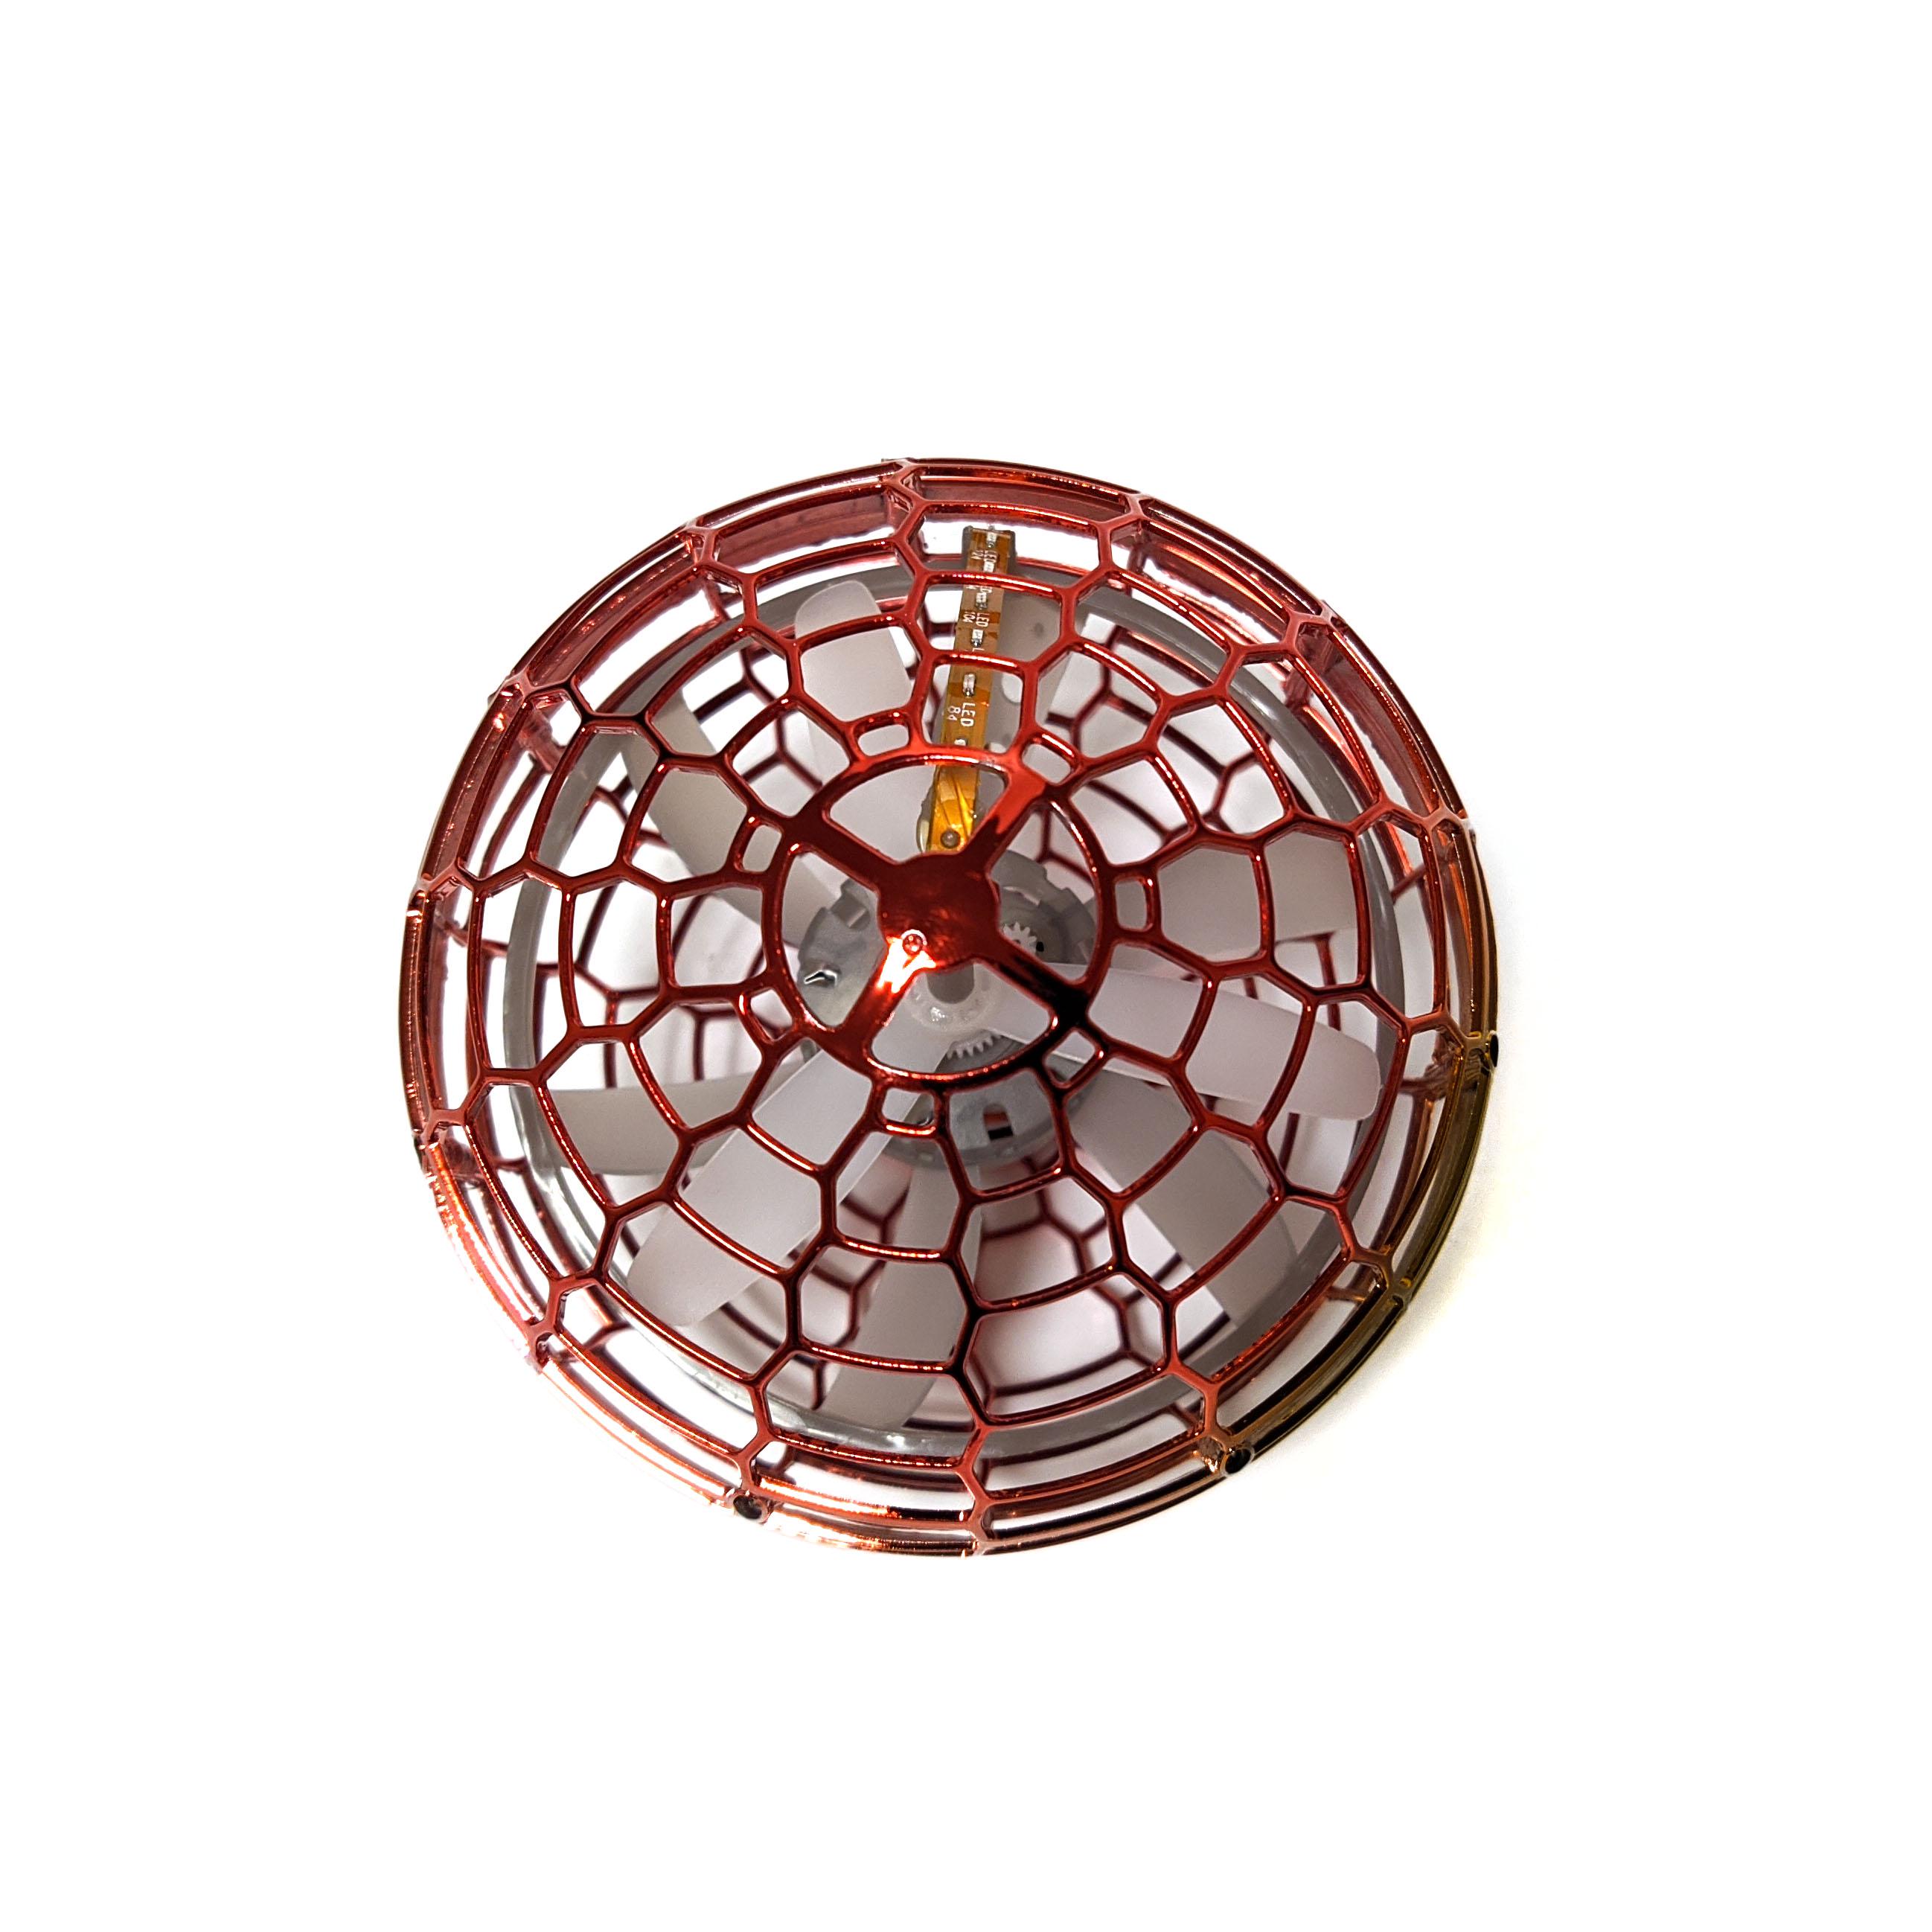 Летающий шар 10 см Jia yue toys интерактивная игрушка Красный (07183k)